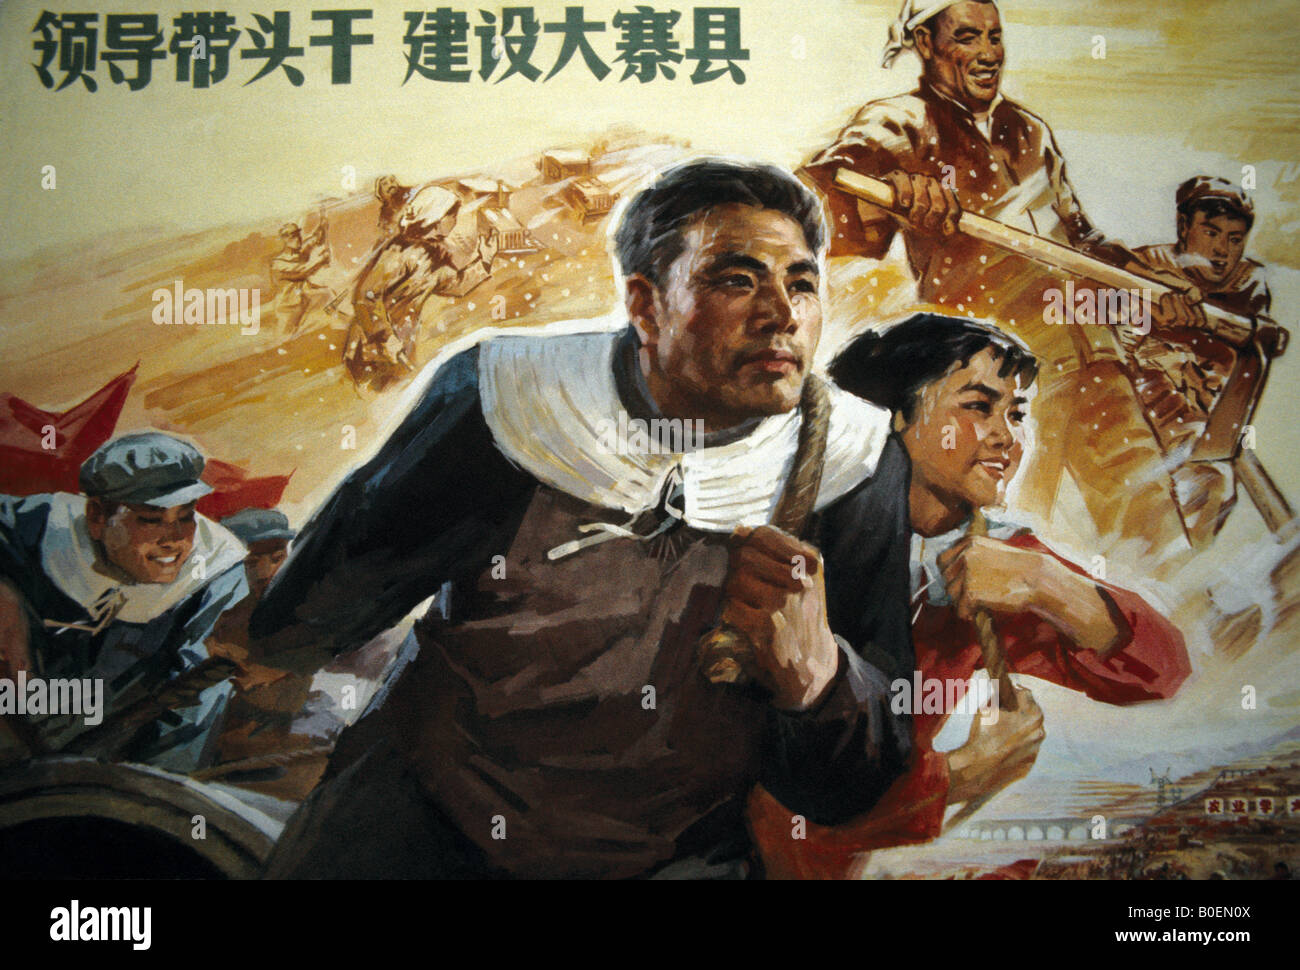 Ein Bauer in den Stil des sozialistischen Realismus Malerei typische Propaganda Kunst während der großen proletarischen Kulturrevolution Stockfoto